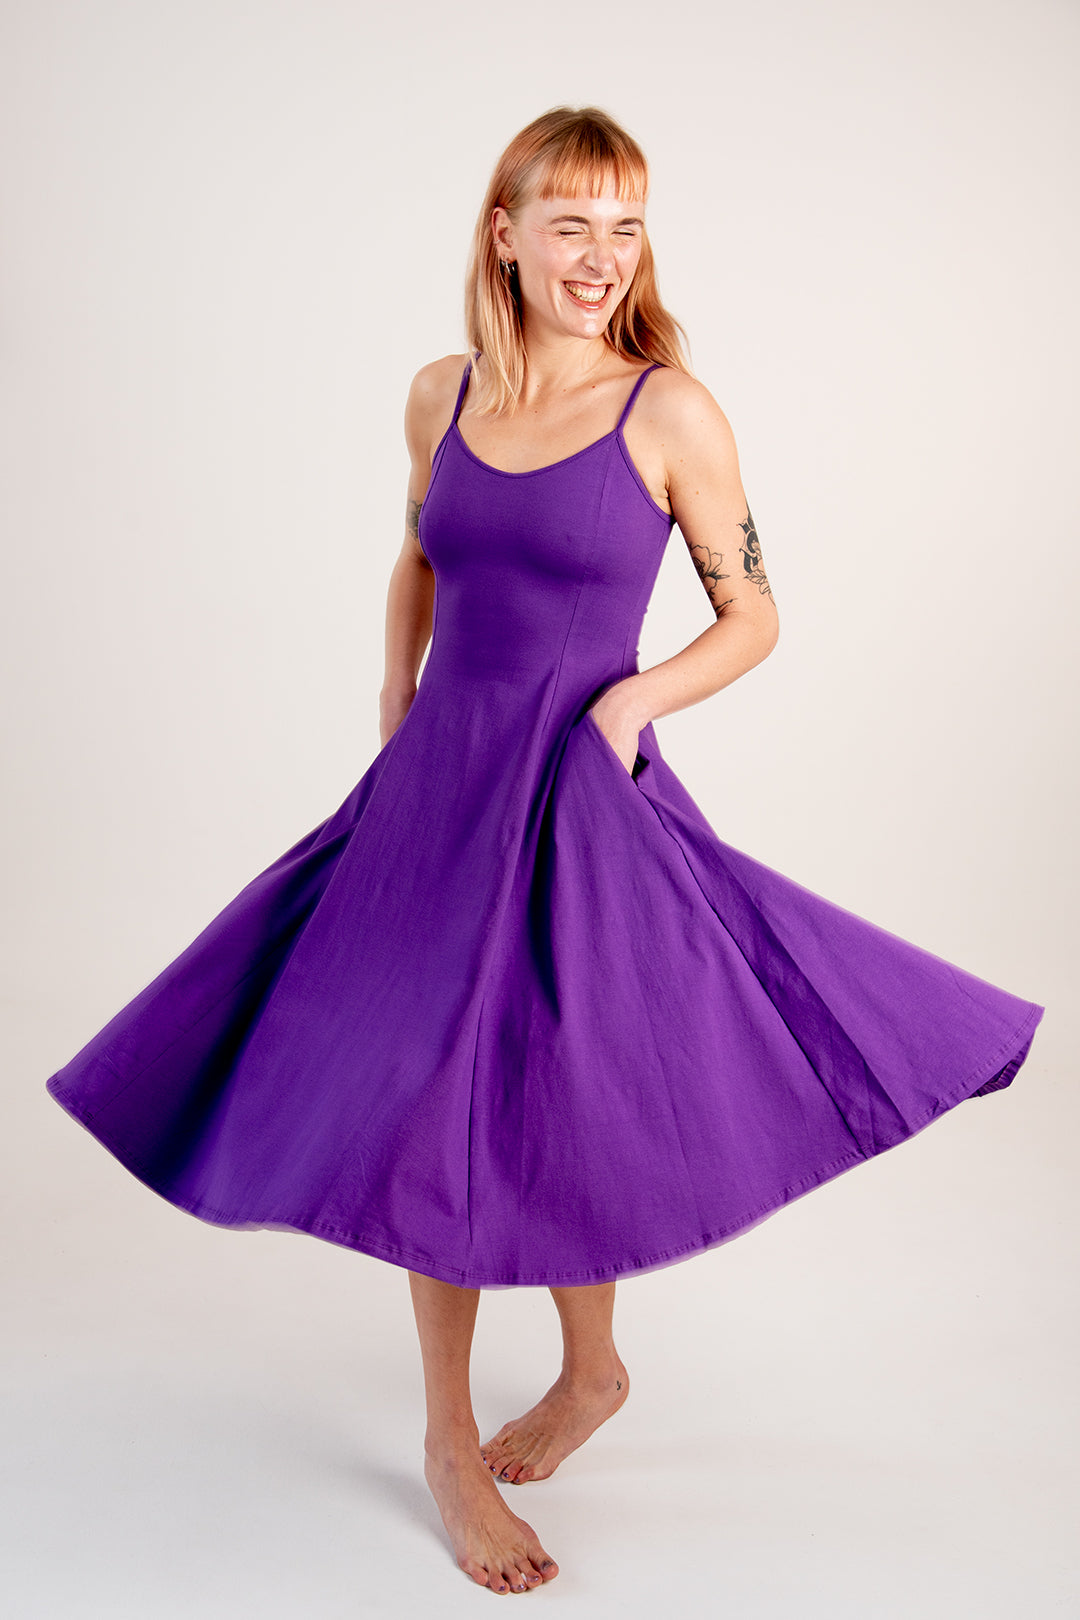 Asri Dress In T. Purple